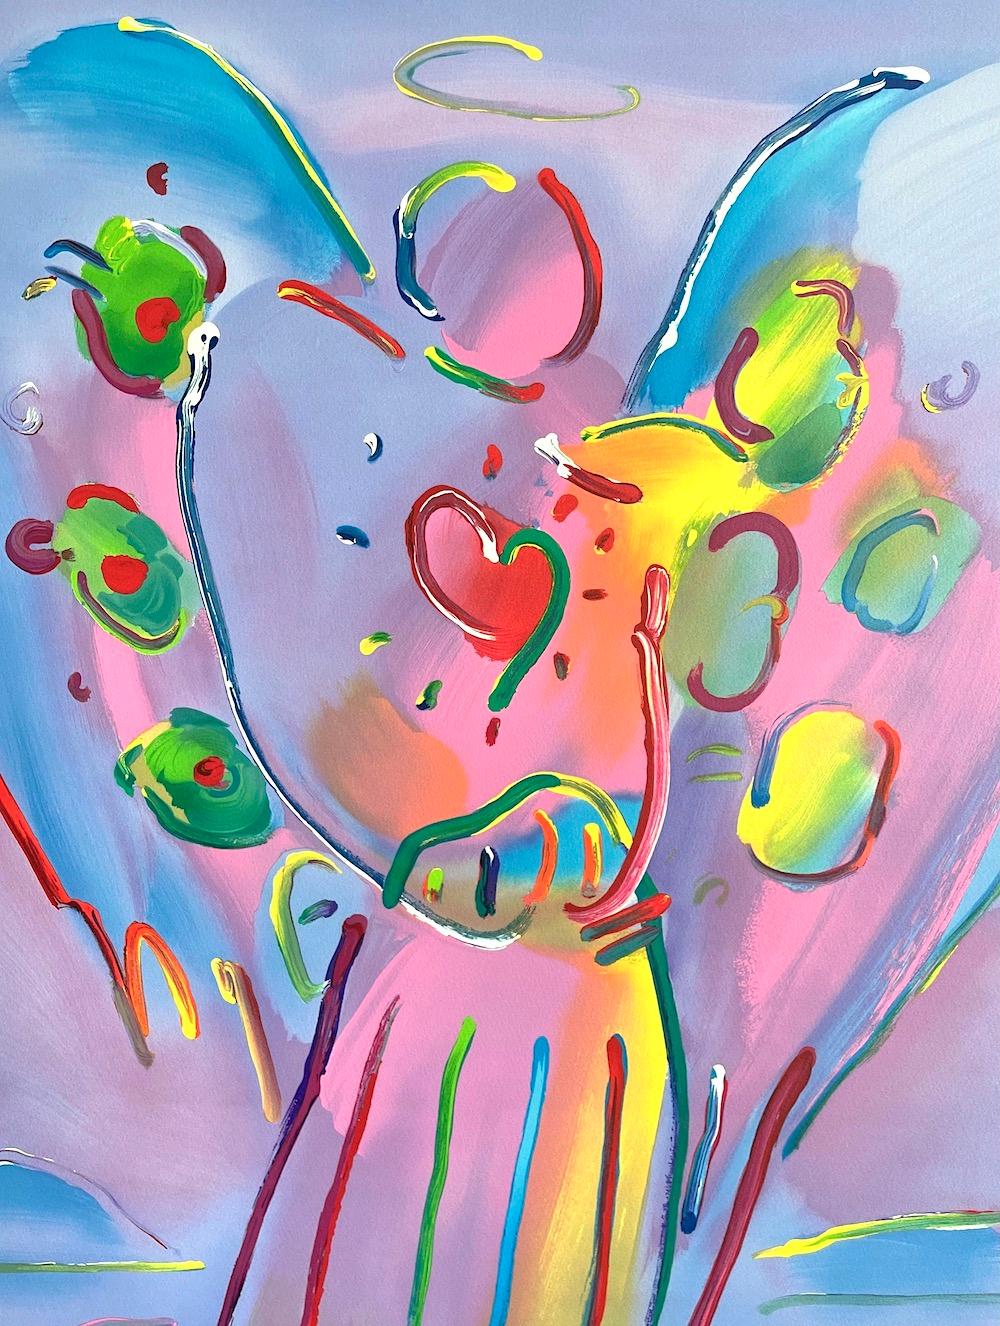 ANGEL WITH HEART, signierte Lithographie, Guardian Angel, Rotes Herz, Regenbogenfarben – Print von Peter Max